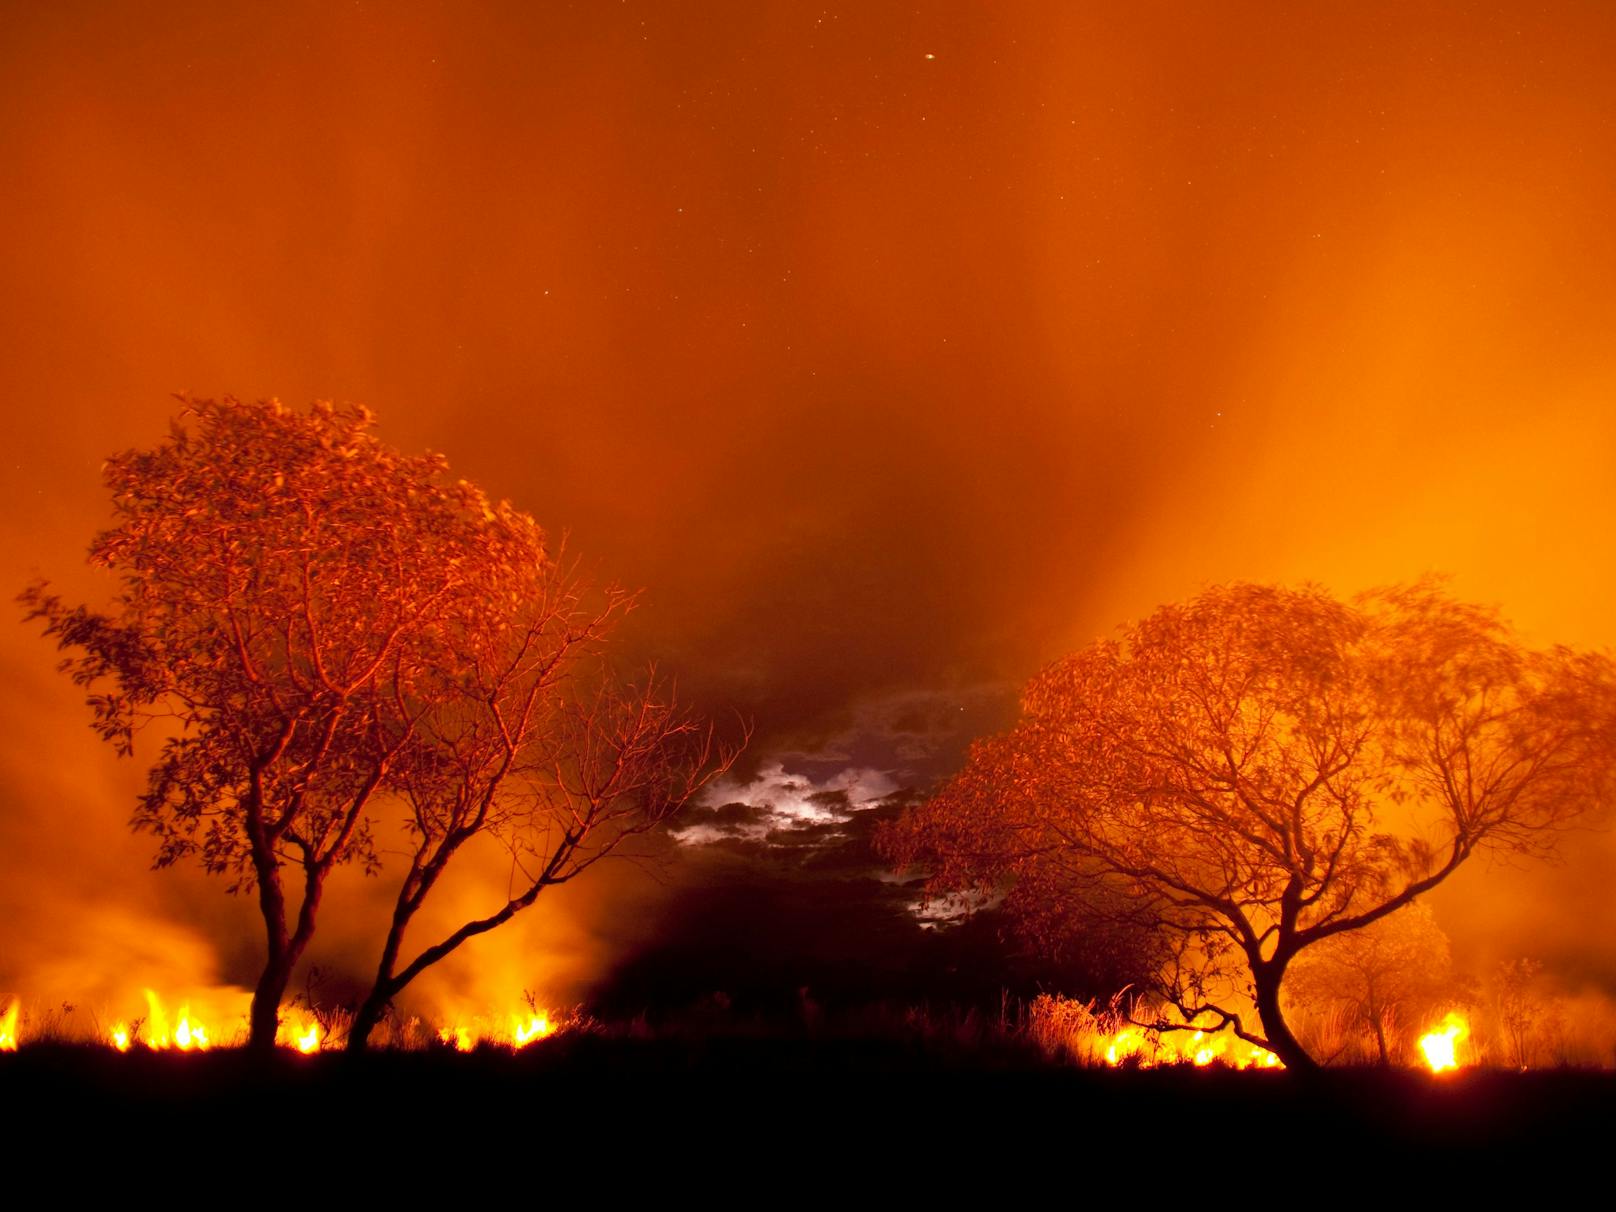 Feuer im Pantanal (Brasilien). Um Grasflächen für die Viehwirtschaft zu gewinnen, werden oft illegale Feuer gelegt.